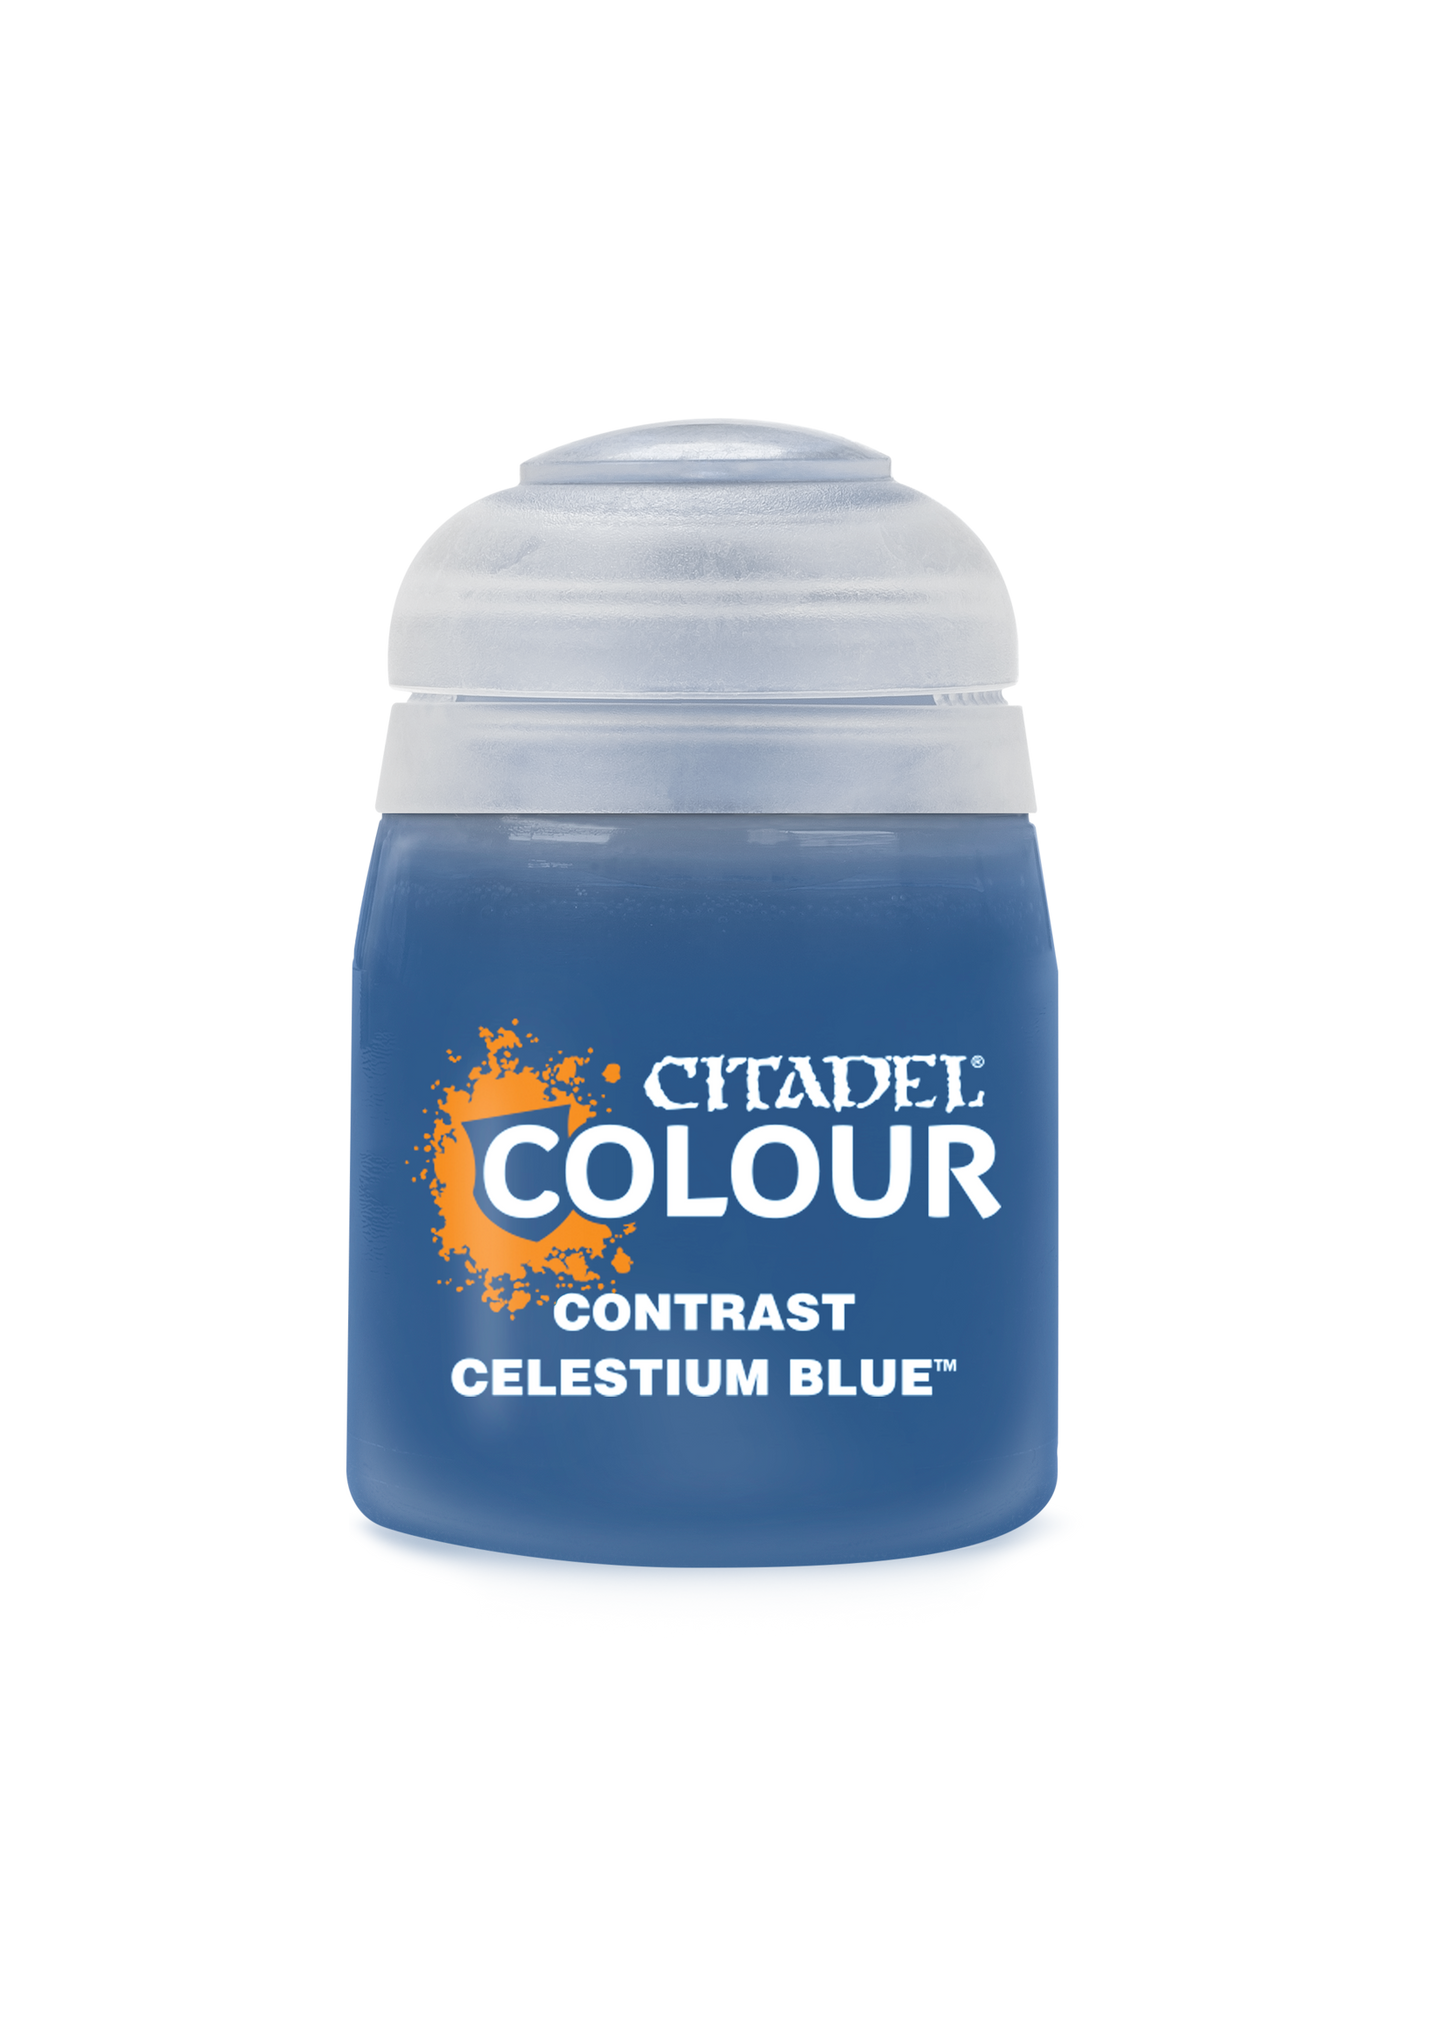 Celestium Blue